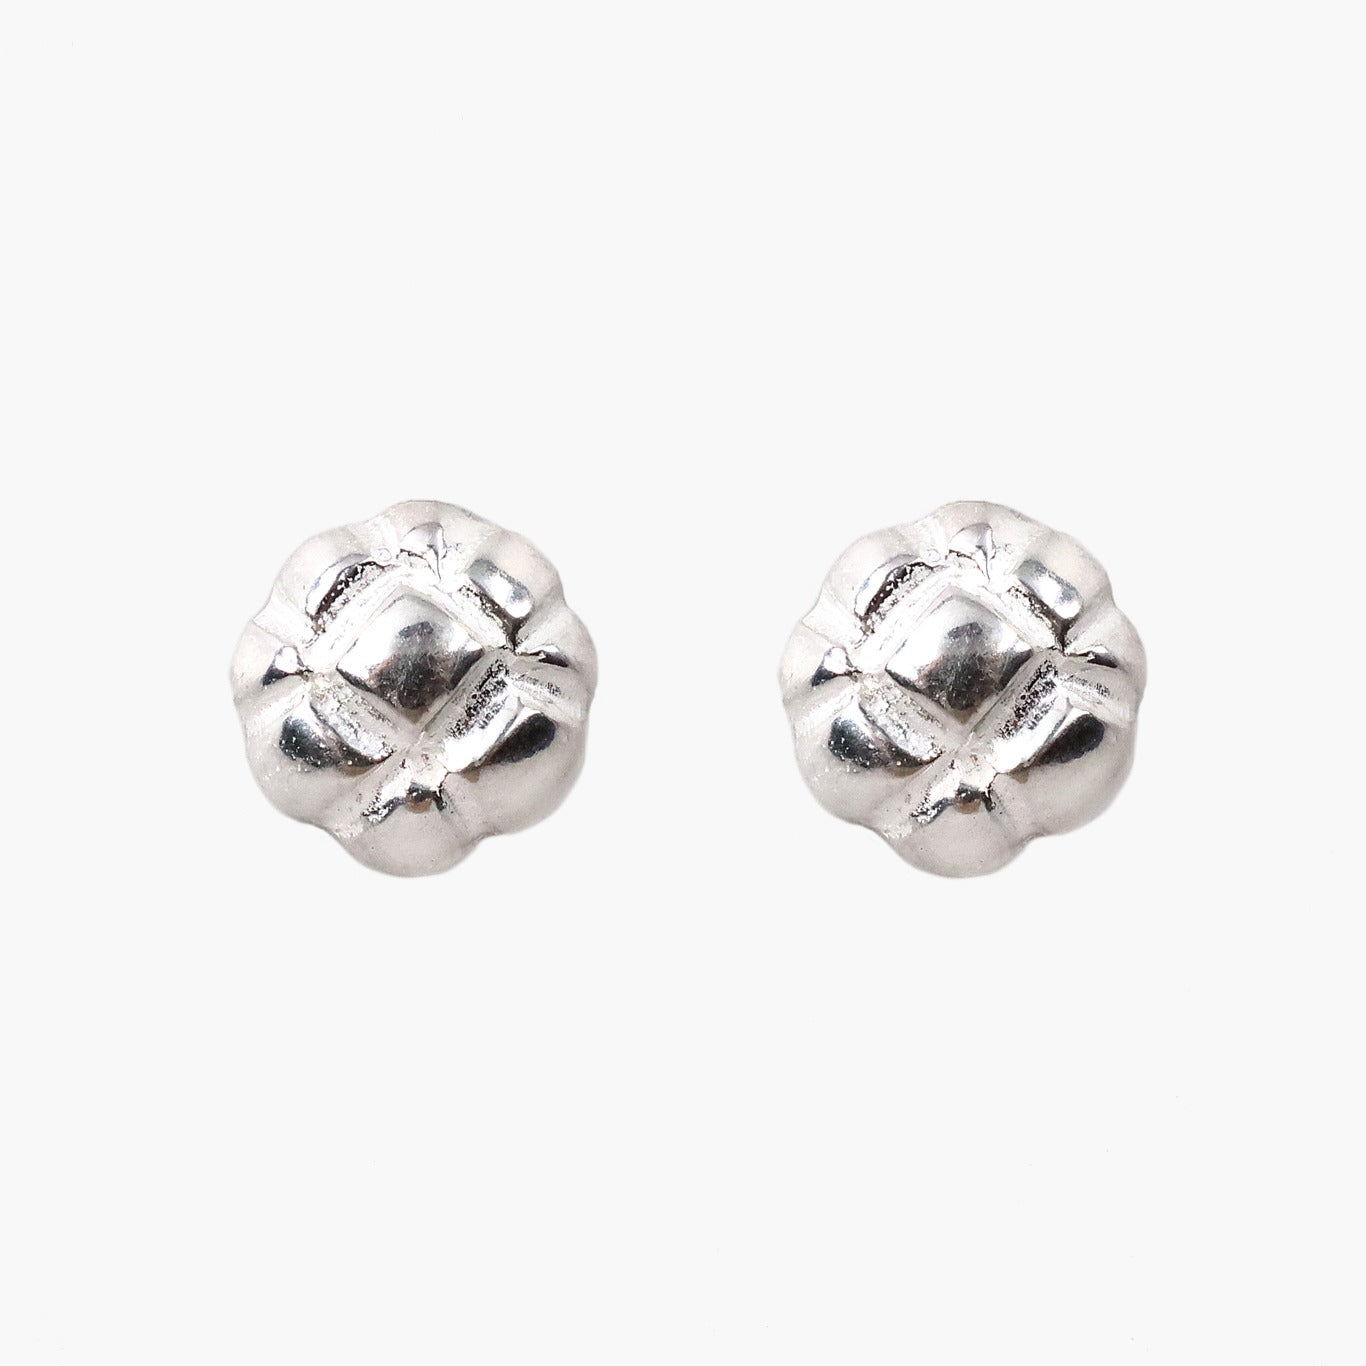 crossing earrings / silver